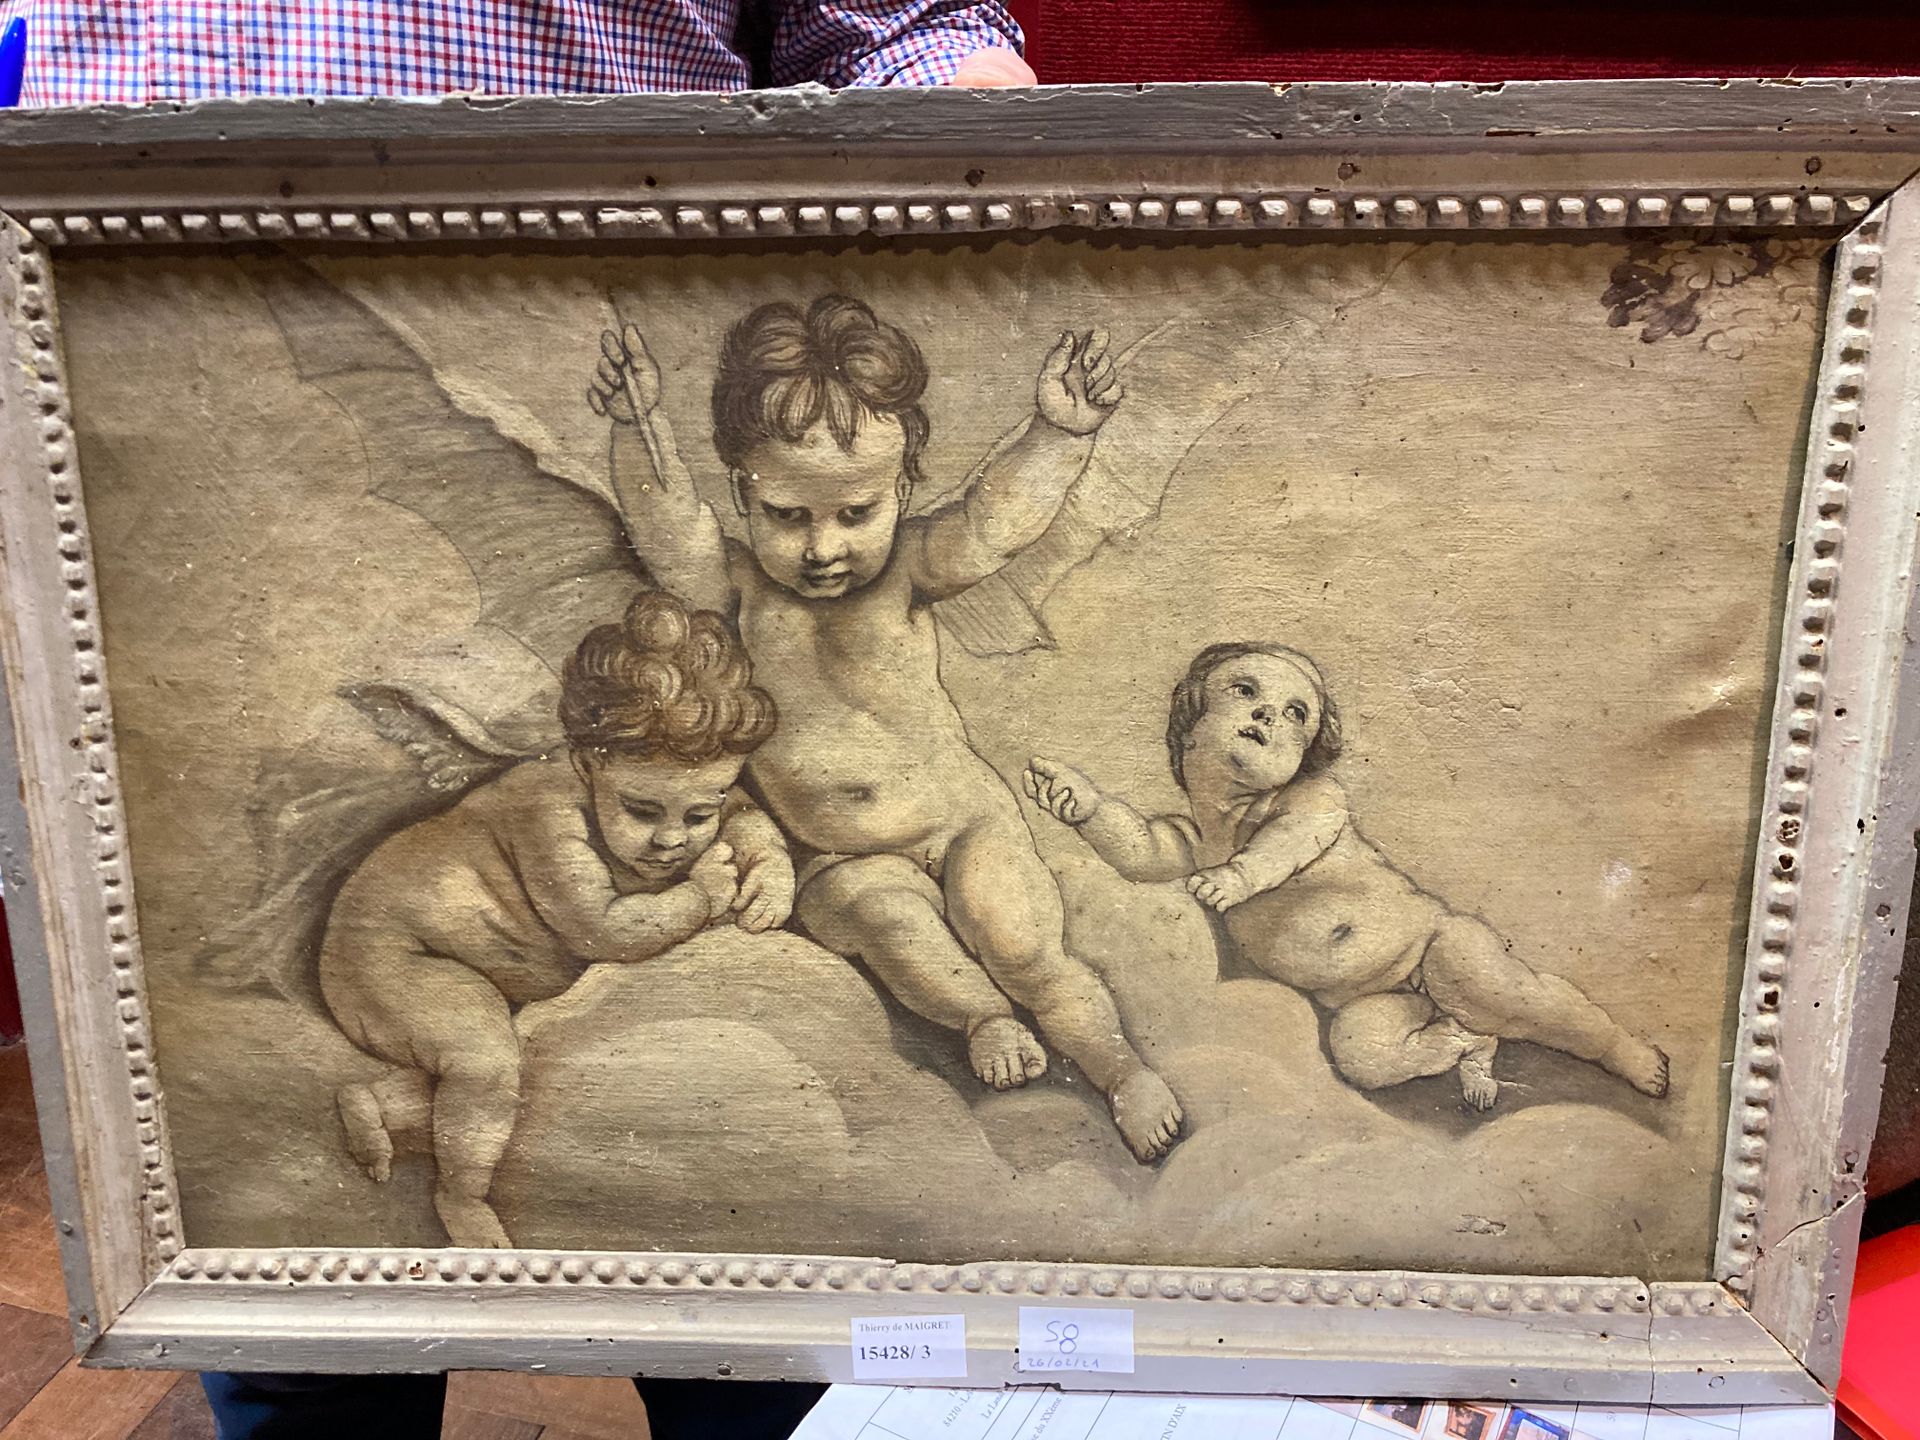 Null 
十九世纪法国学派的三个小天使

油画布面，灰沙色

41 x 59厘米

刮痕和轻微缺损

地段按原样出售